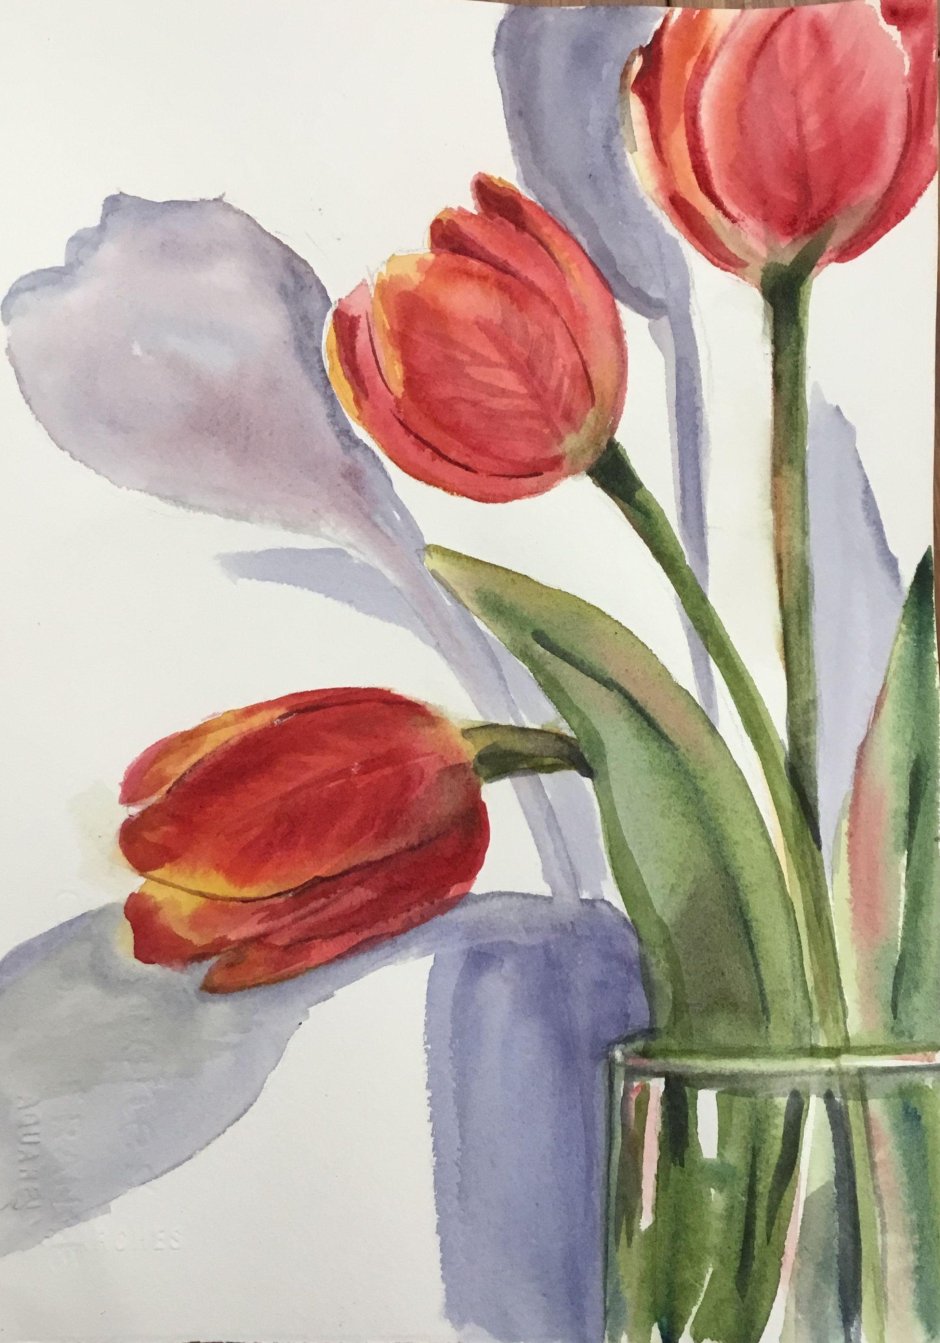 Рисование тюльпаны в вазе